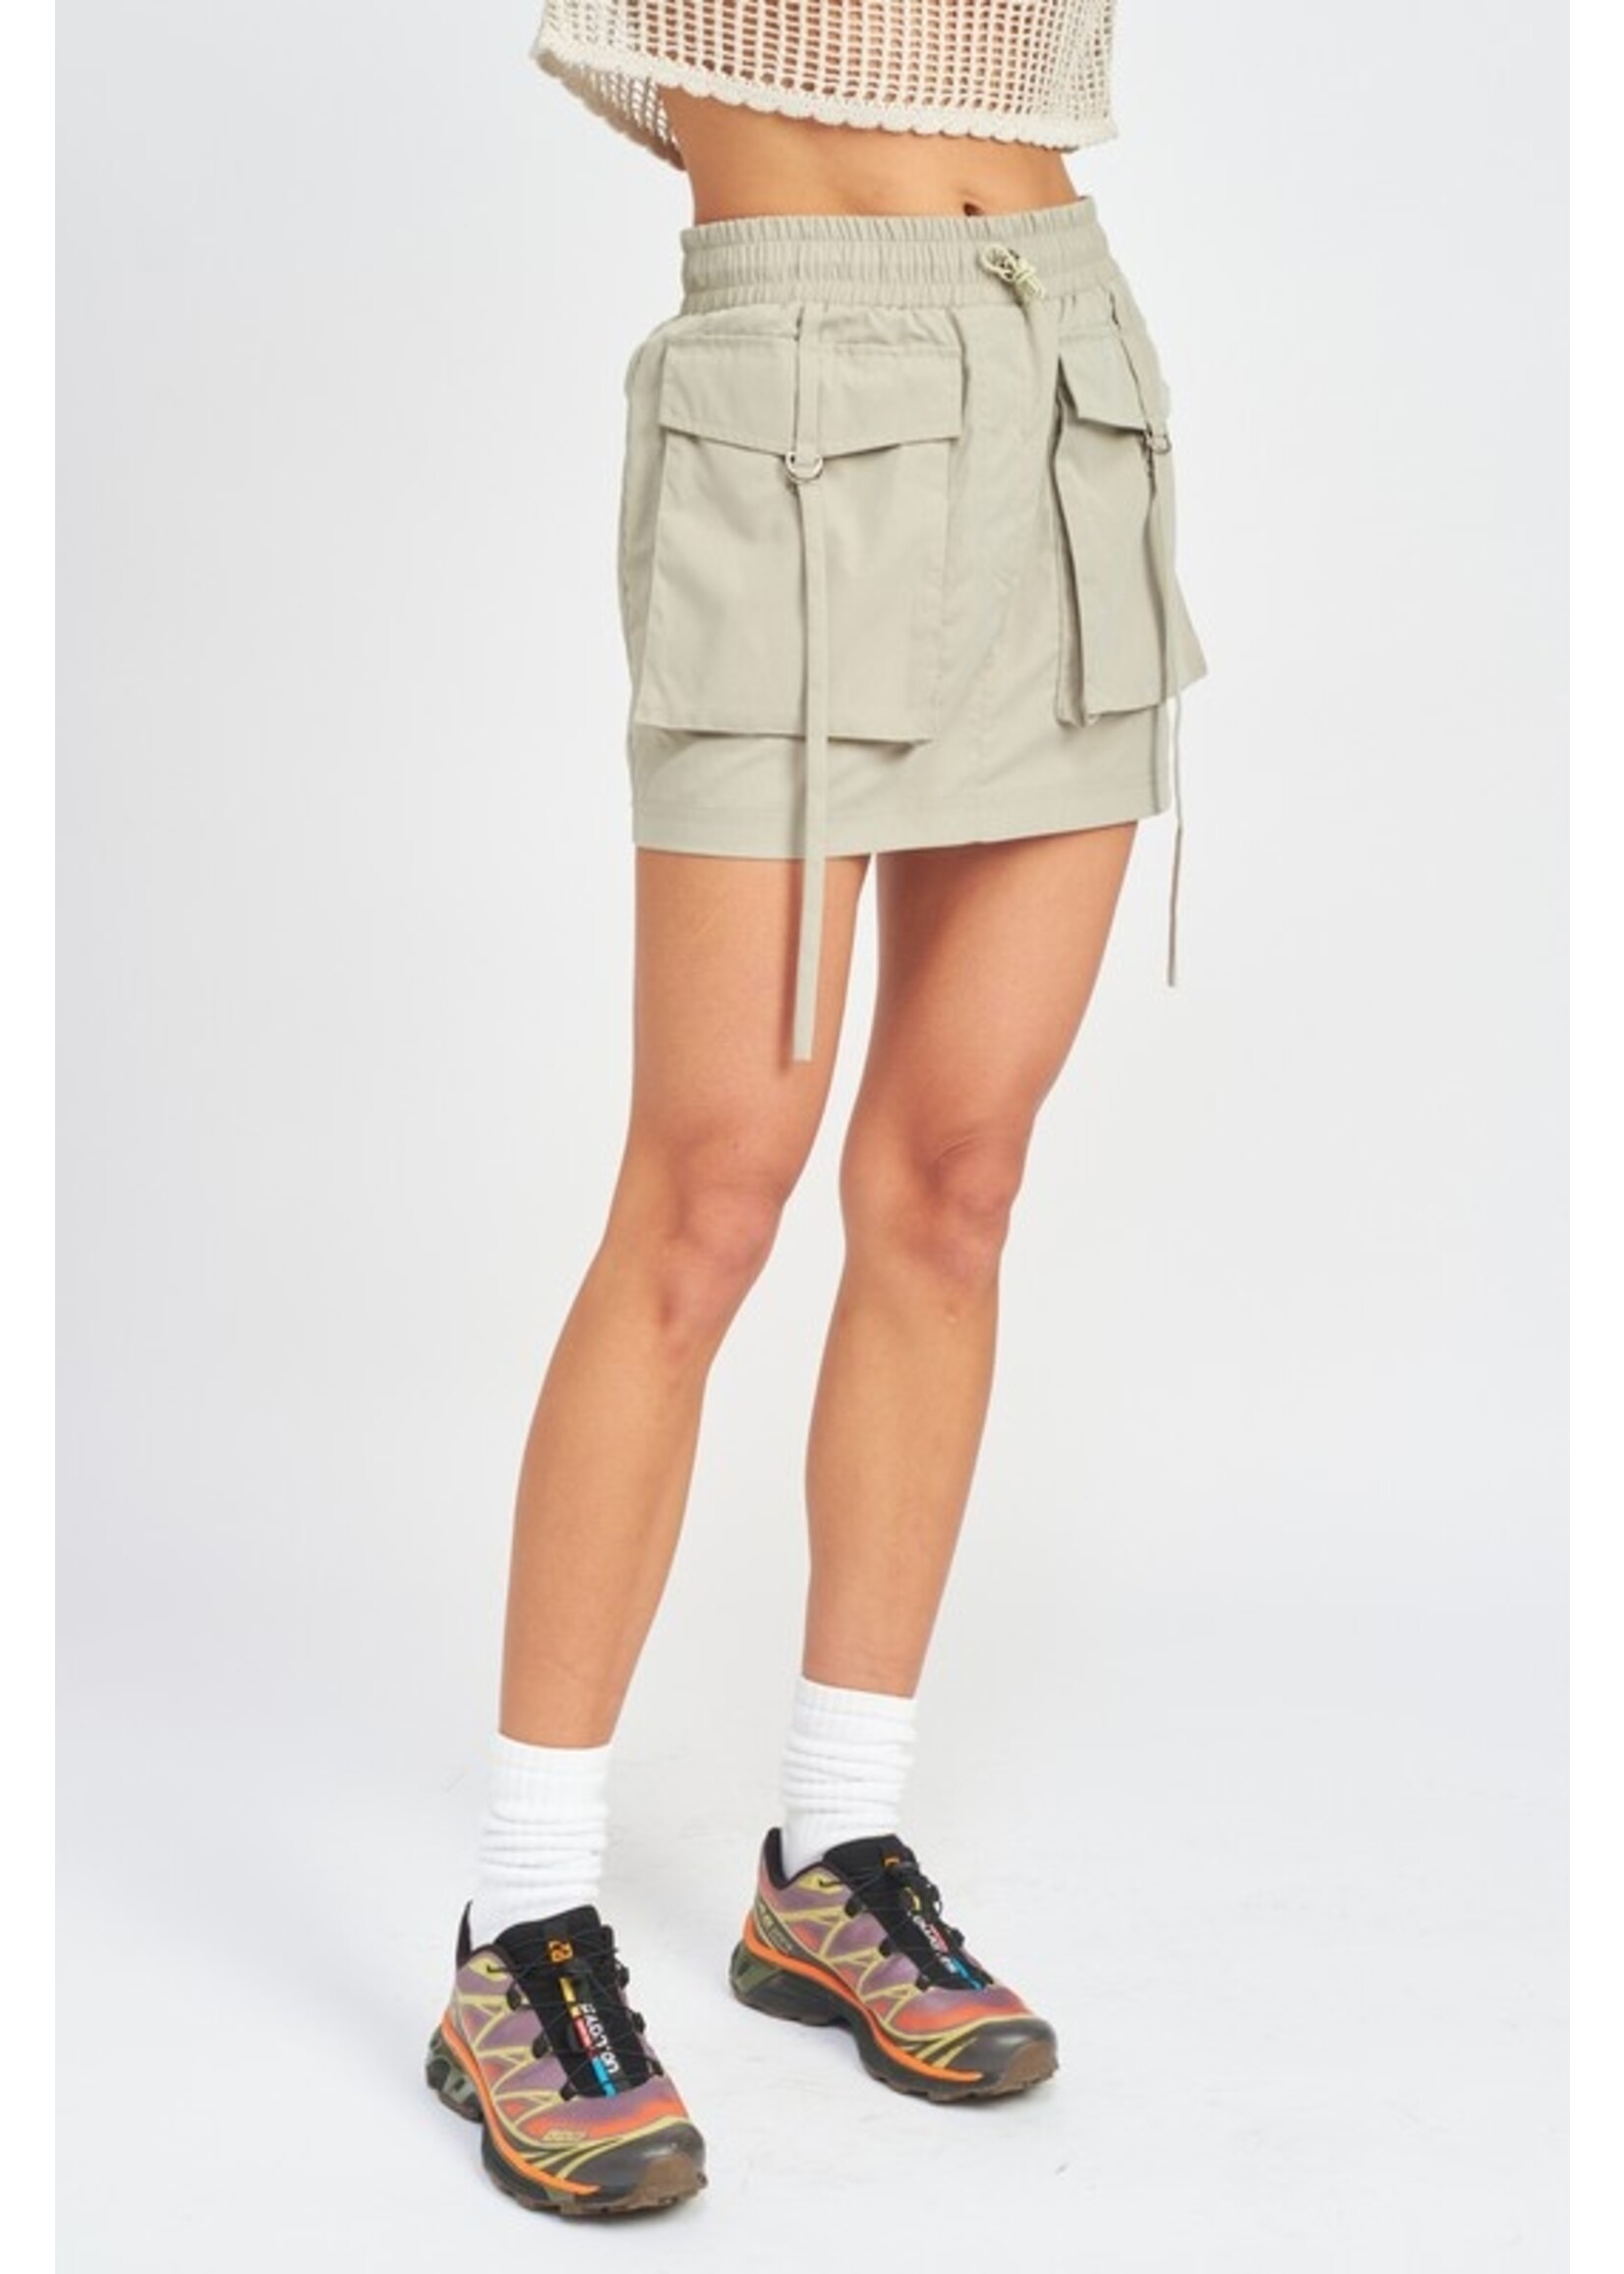 Emory Park Cargo Mini Skirt - IMK8964